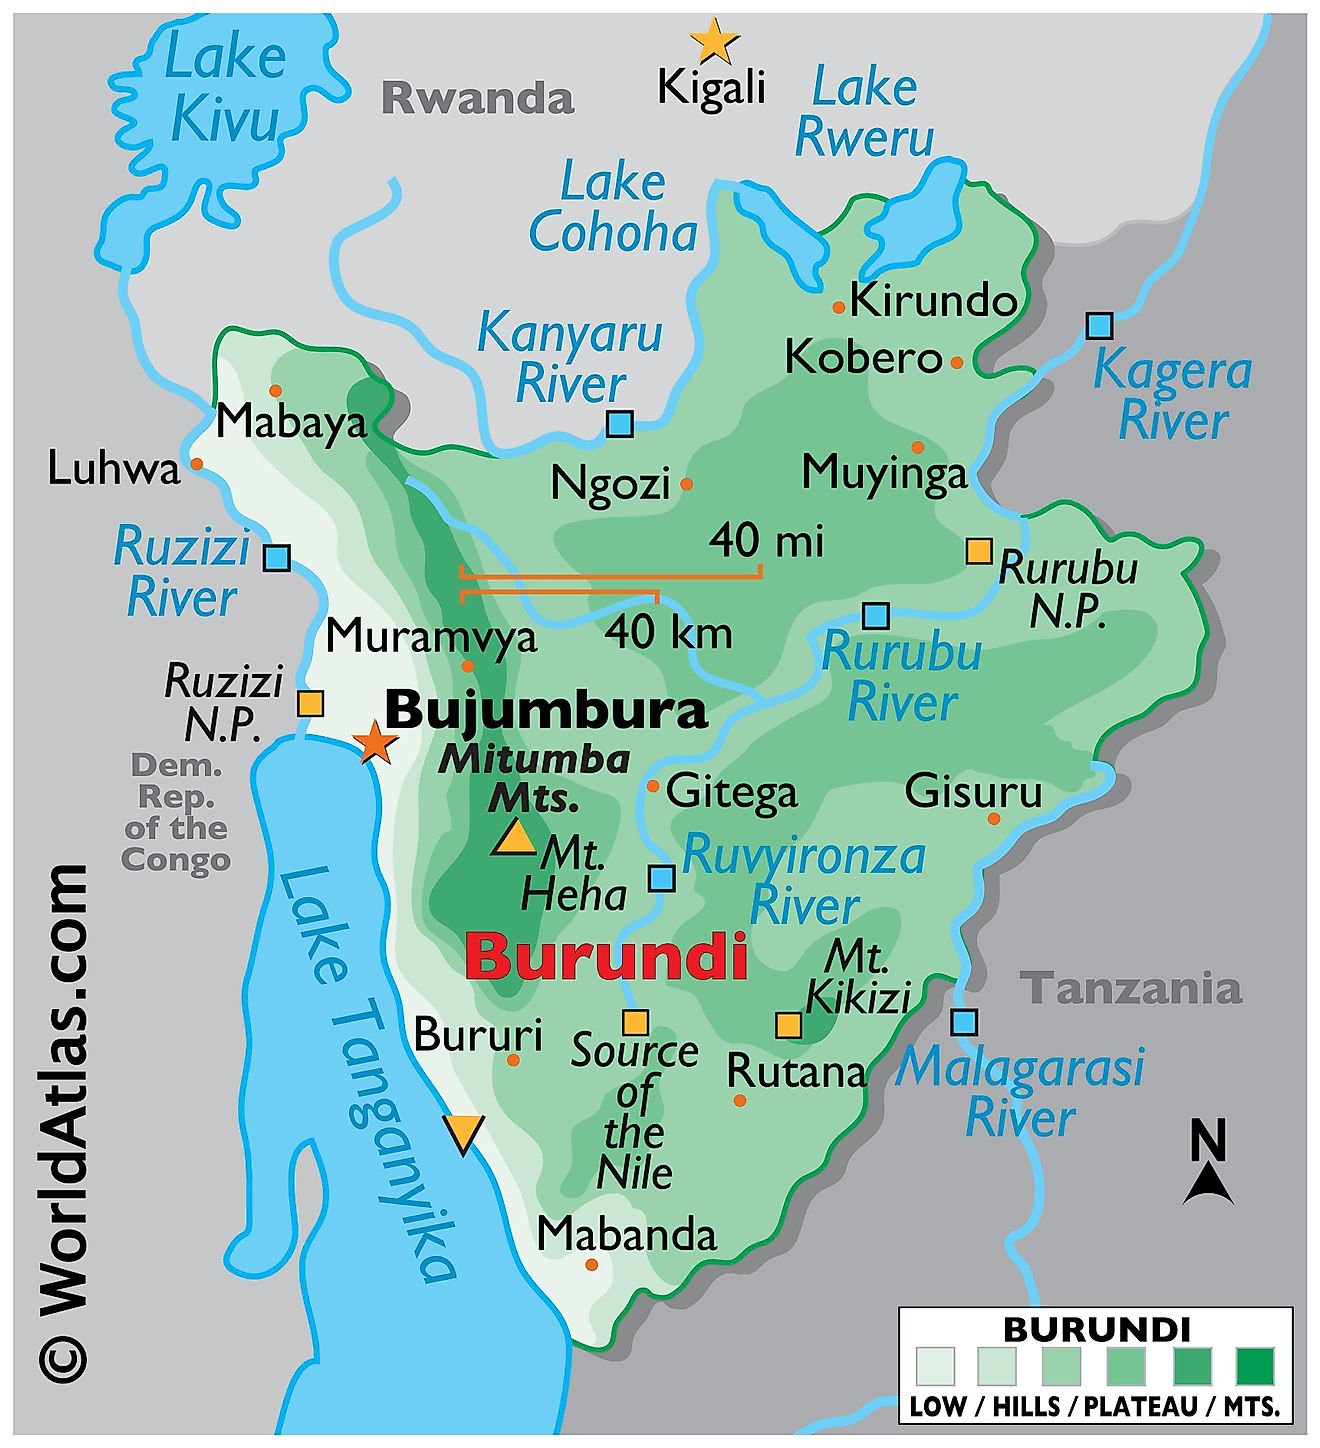 Mapa físico de Burundi con límites estatales. Detalla el relieve, las características físicas del país, incluidas las cadenas montañosas, varios cuerpos de agua como el lago Tanganyika, los principales ríos, ciudades, puntos extremos, etc.